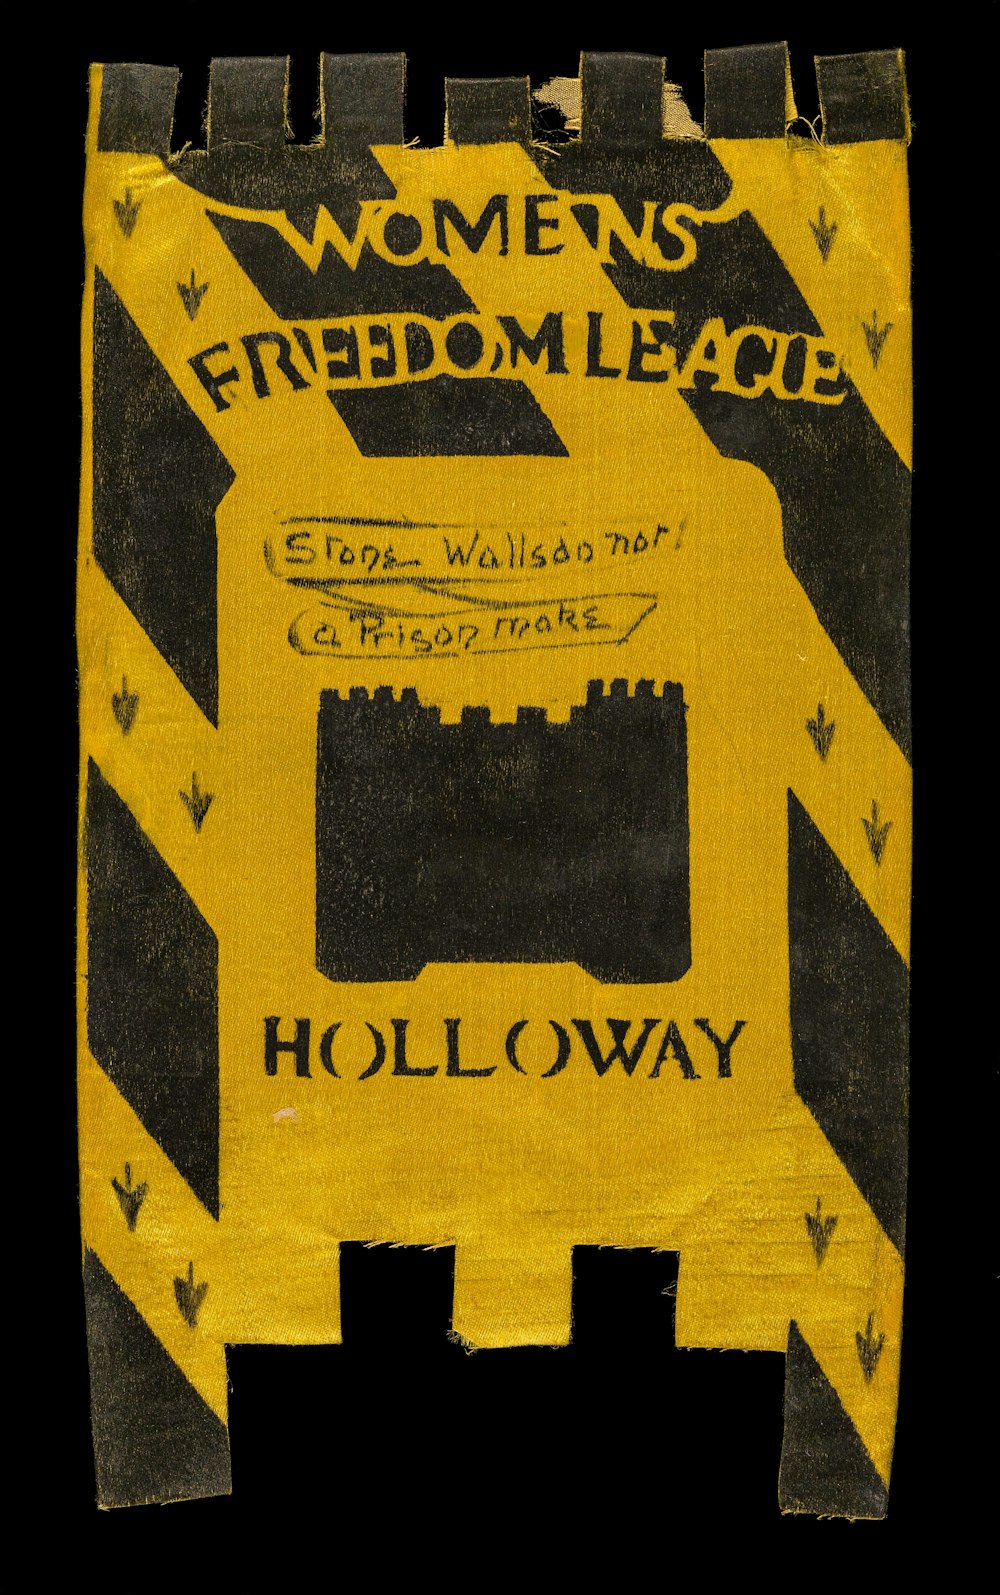 女性自由連盟と書かれた黄色と黒の看板